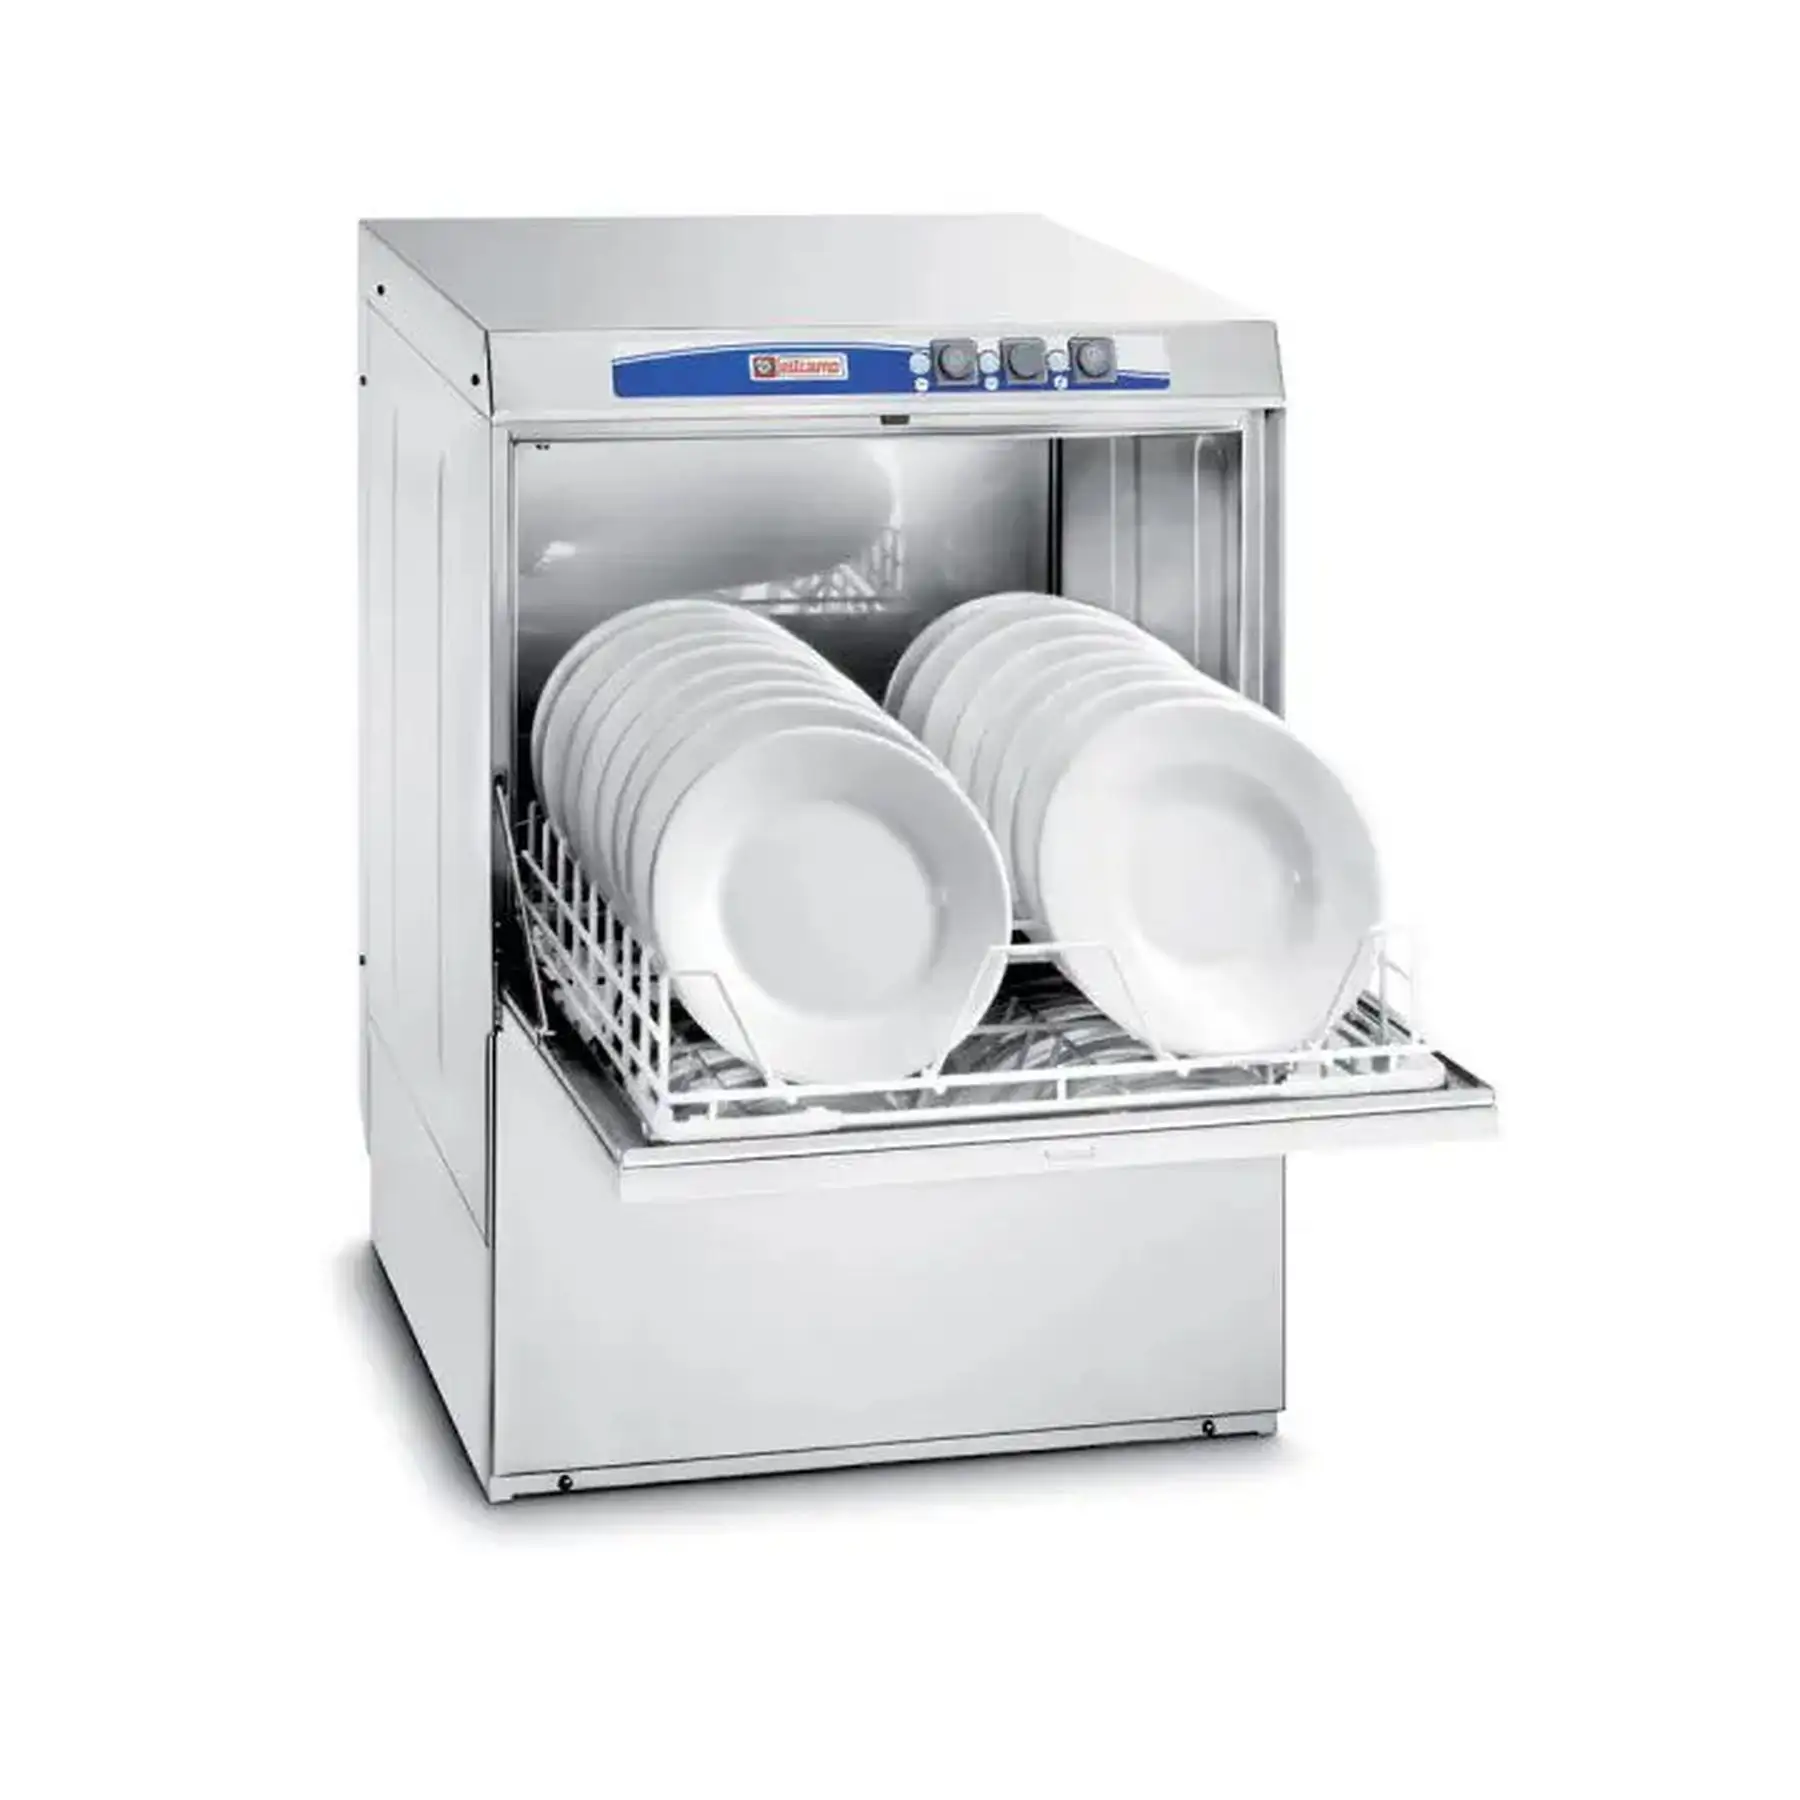 頑丈なステンレス製食器洗い機-両開きドア付きのBASIC BE 50-効率的な商業洗浄用